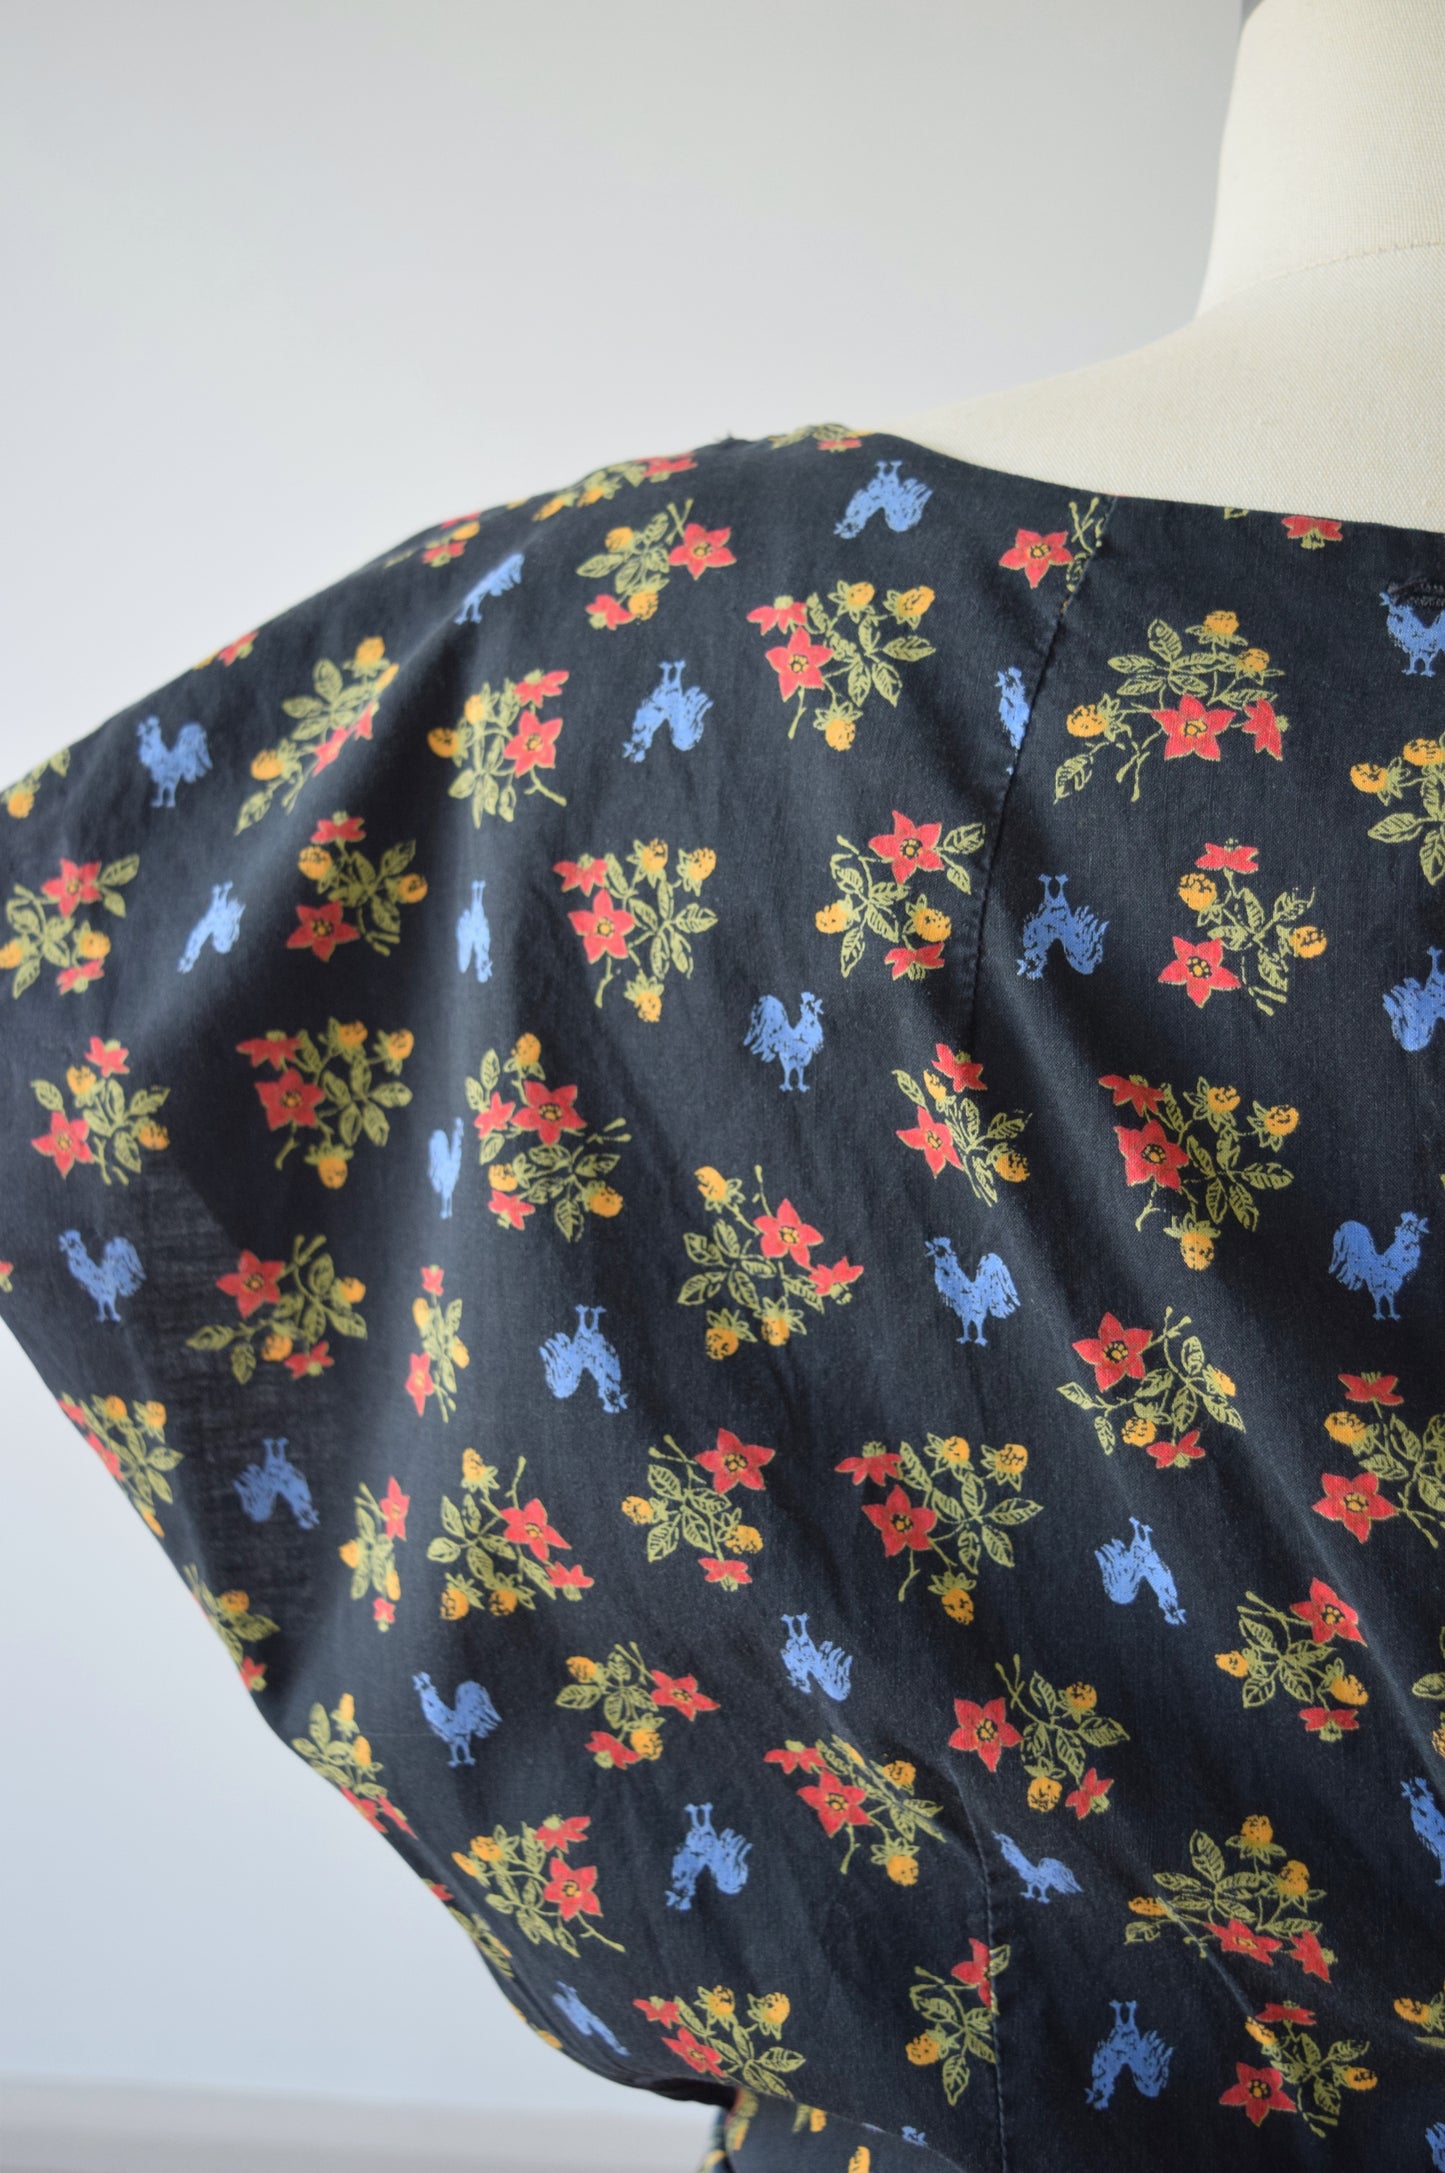 Rooster Print Swirl Wrap Dress | L/XL